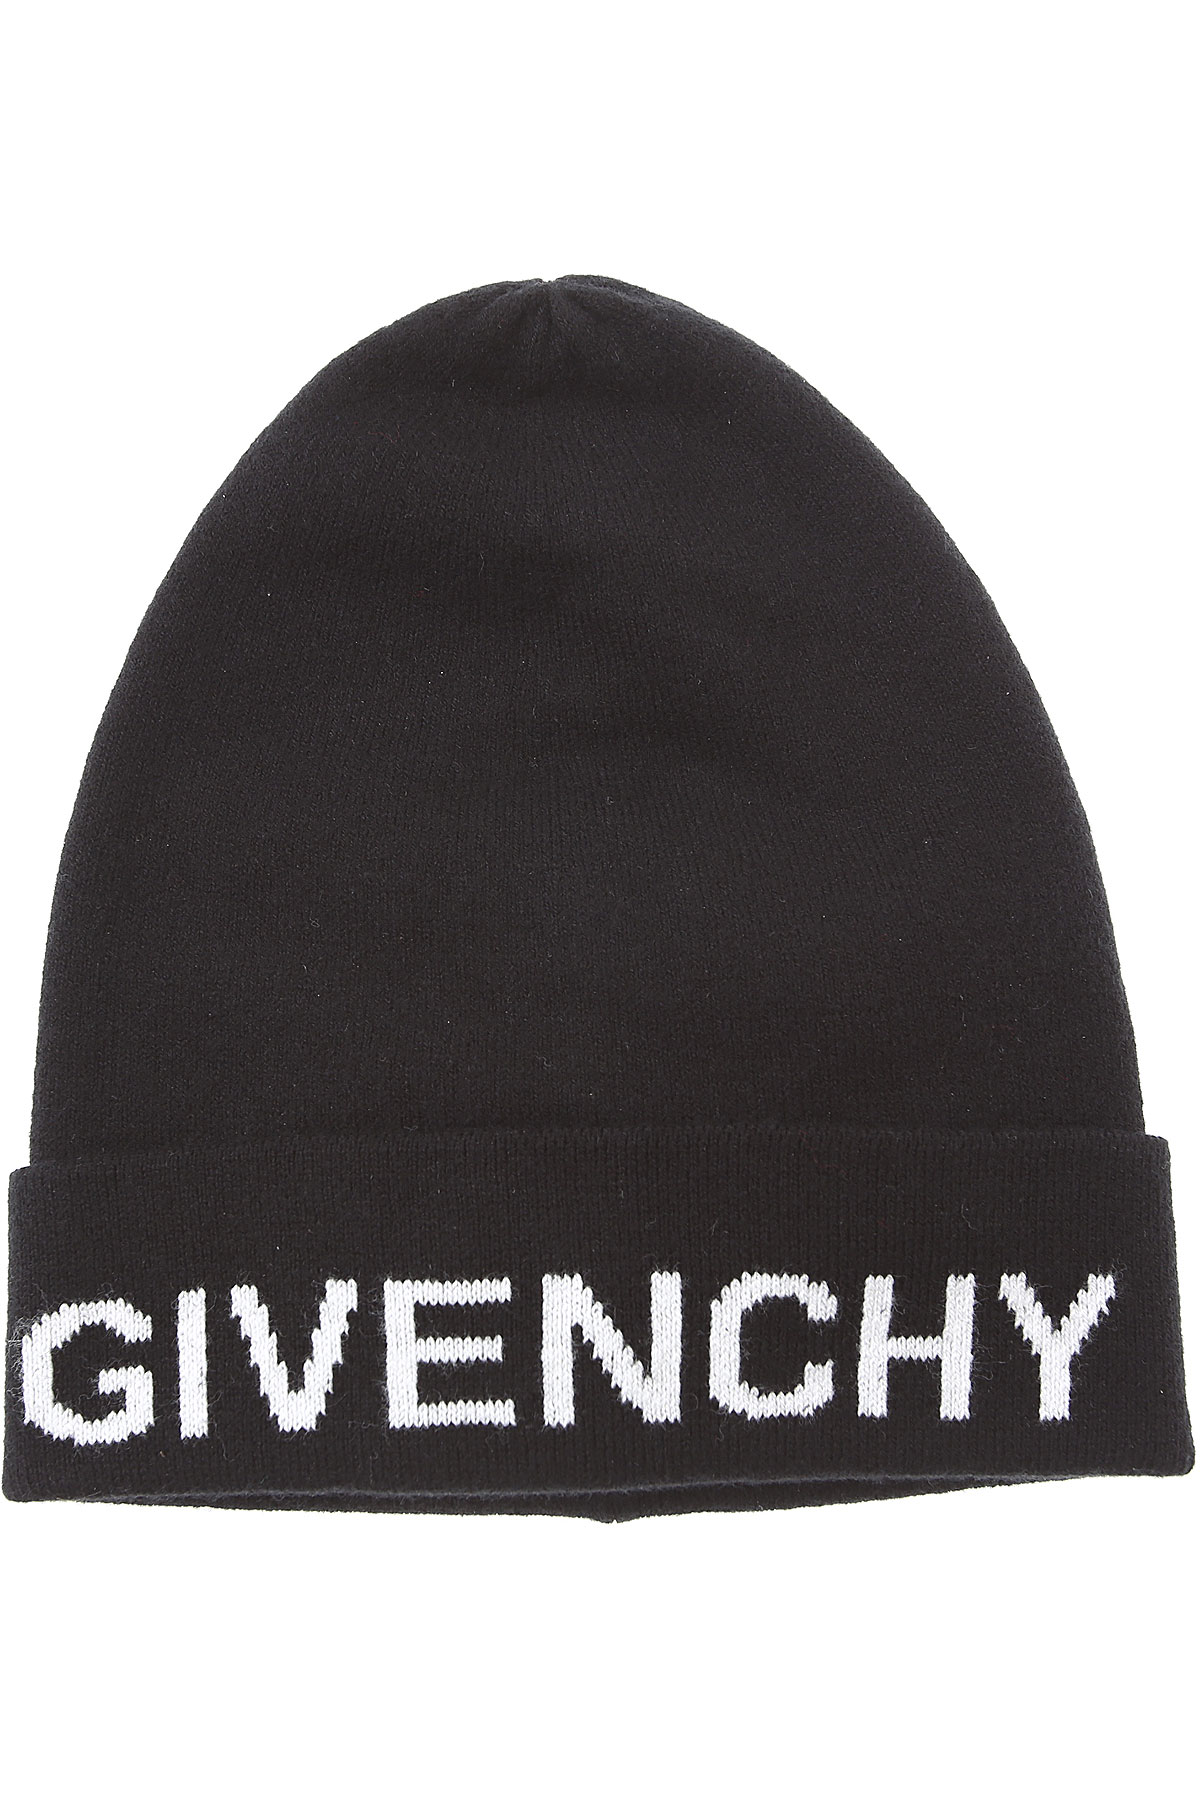 Givenchy Kinder Hut für Jungen Günstig im Sale, Schwarz, Baumwolle, 2017